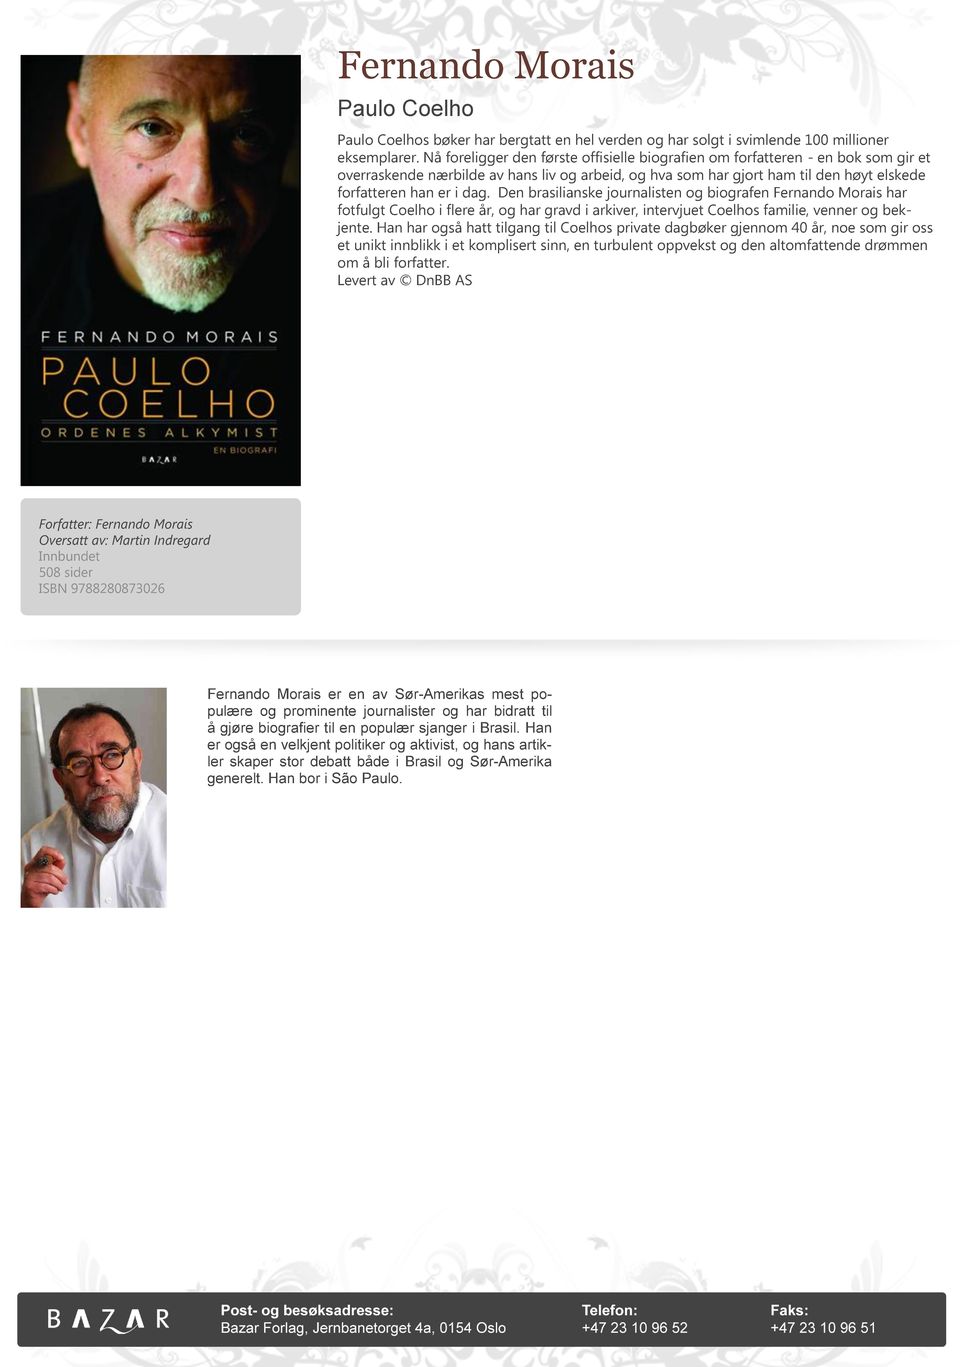 Den brasilianske journalisten og biografen Fernando Morais har fotfulgt Coelho i flere år, og har gravd i arkiver, intervjuet Coelhos familie, venner og bekjente.